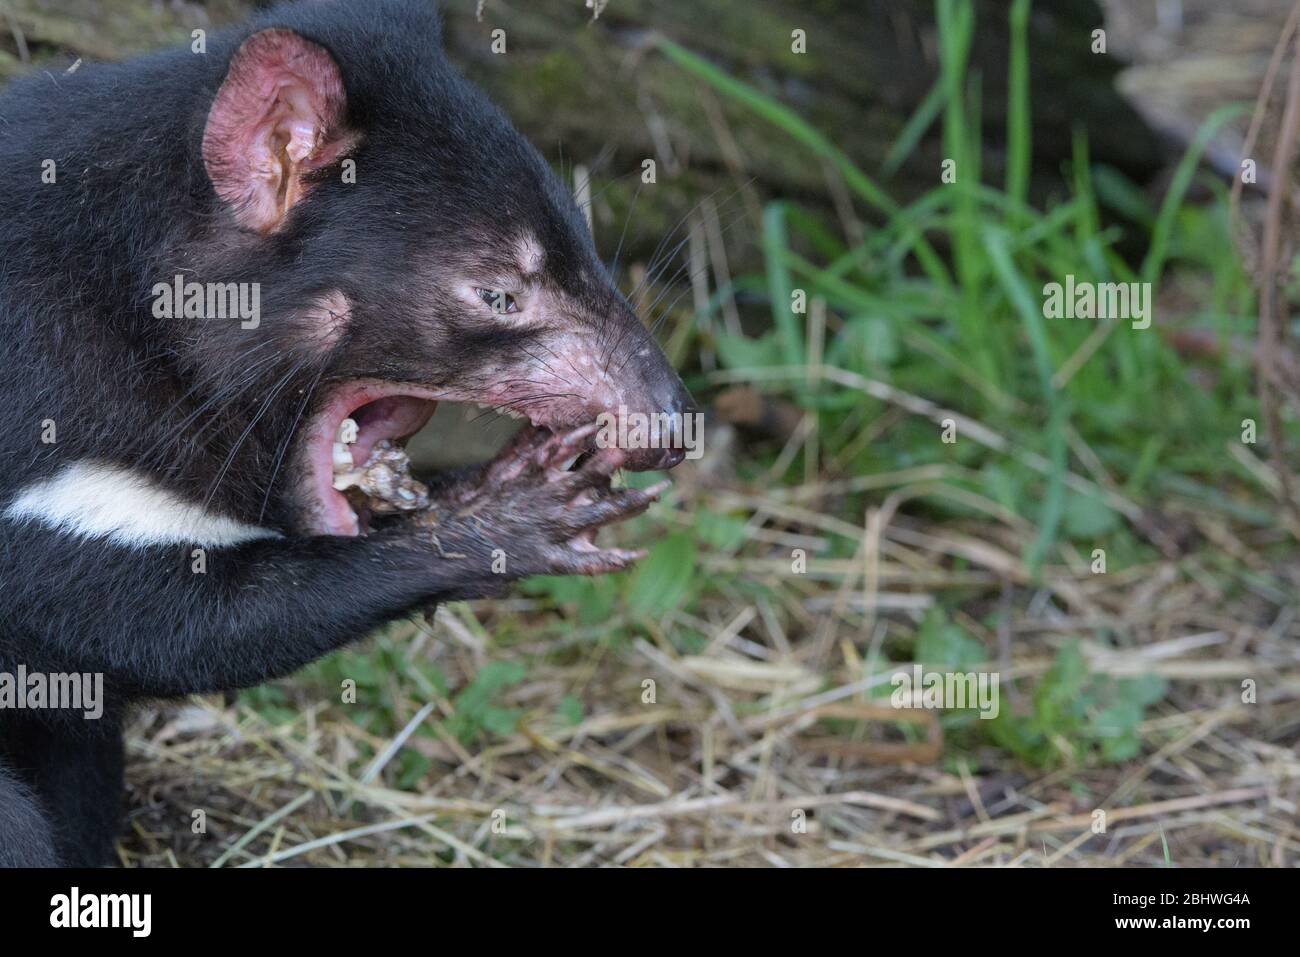 El diablo de Tasmania tratando de sacar un pedazo de hueso animal de su mandíbula con sus patas delanteras en el parque de conservación de Ulverston en Tasmania, Australia. Foto de stock